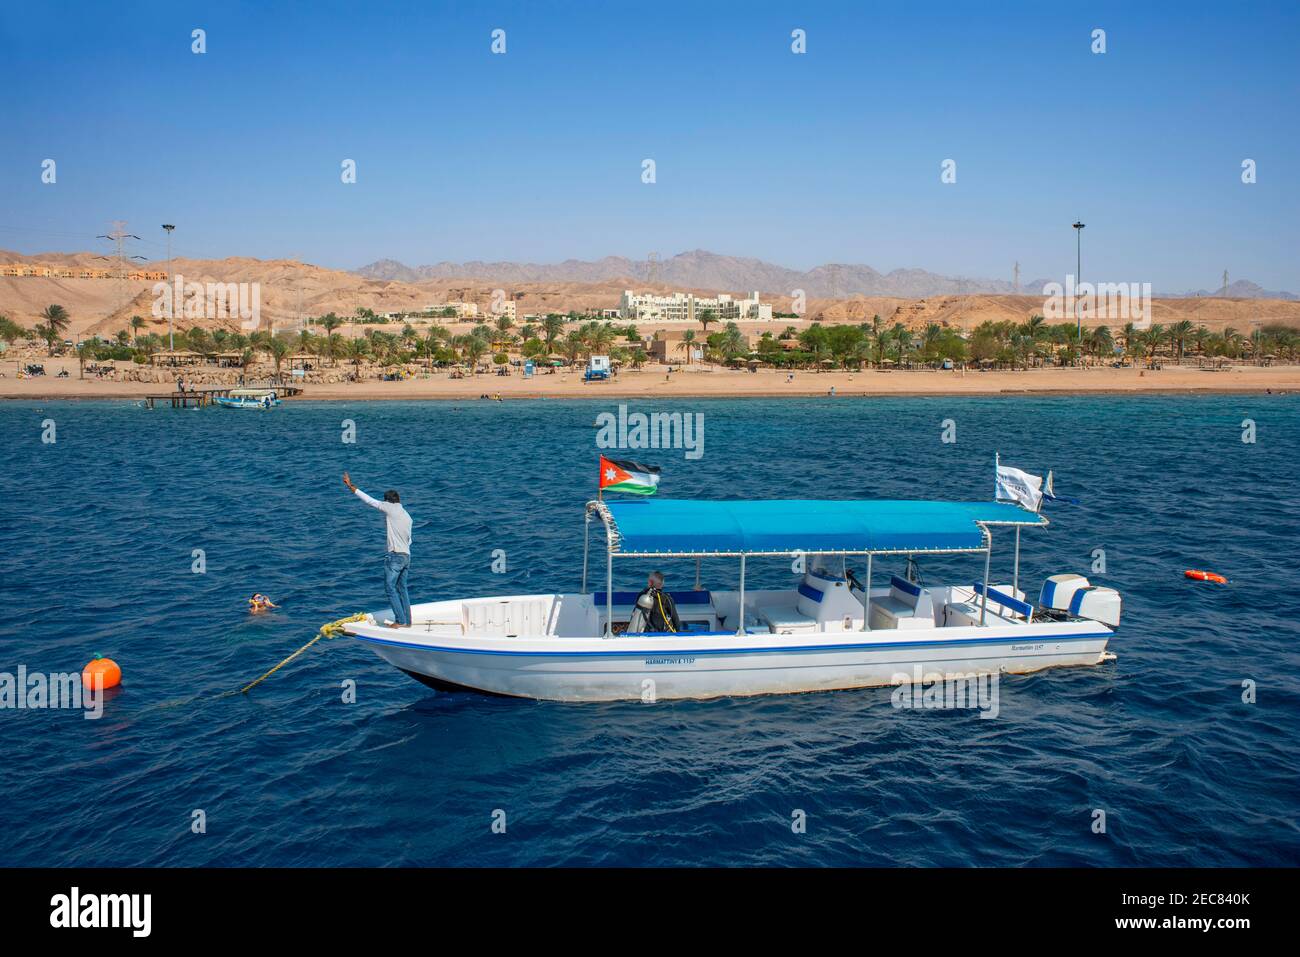 Los turistas a bordo de un barco de buceo, se enfrían en las aguas del Golfo de Aqaba en Jordania. Aqaba tiene excelentes arrecifes de buceo y esnórquel. Foto de stock